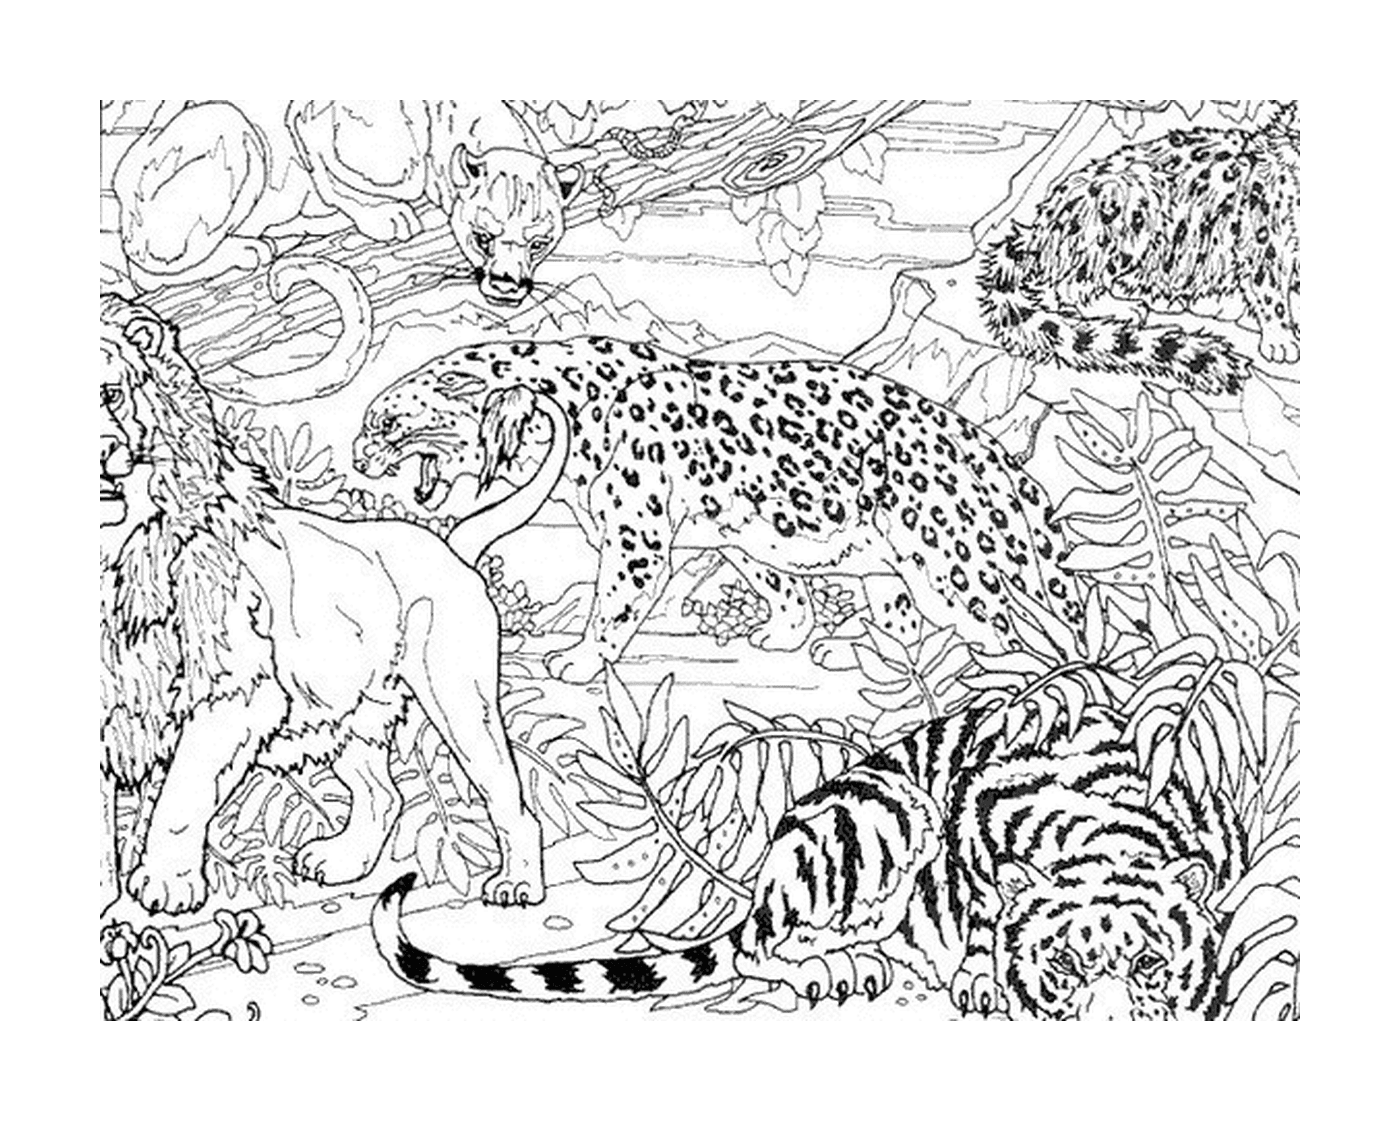  जंगल में चीता और दो शेर 